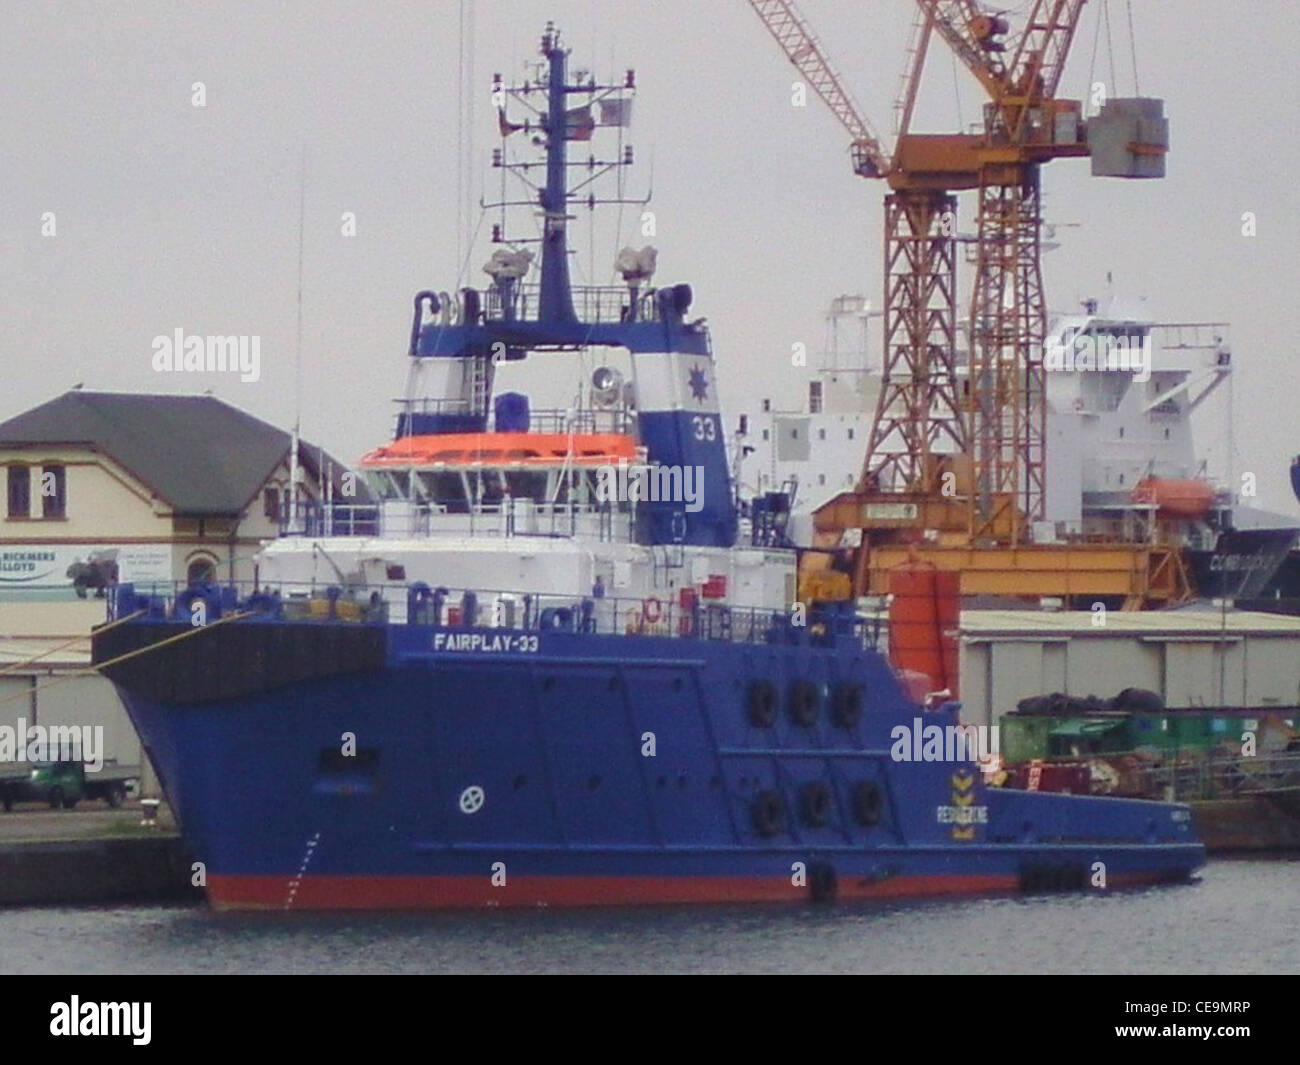 Das Hochsee-Twin Schraube Anchor Handling tug (AHT) Fairplay-33 auf der Lloyd Werft in Bremerhaven. Stockfoto